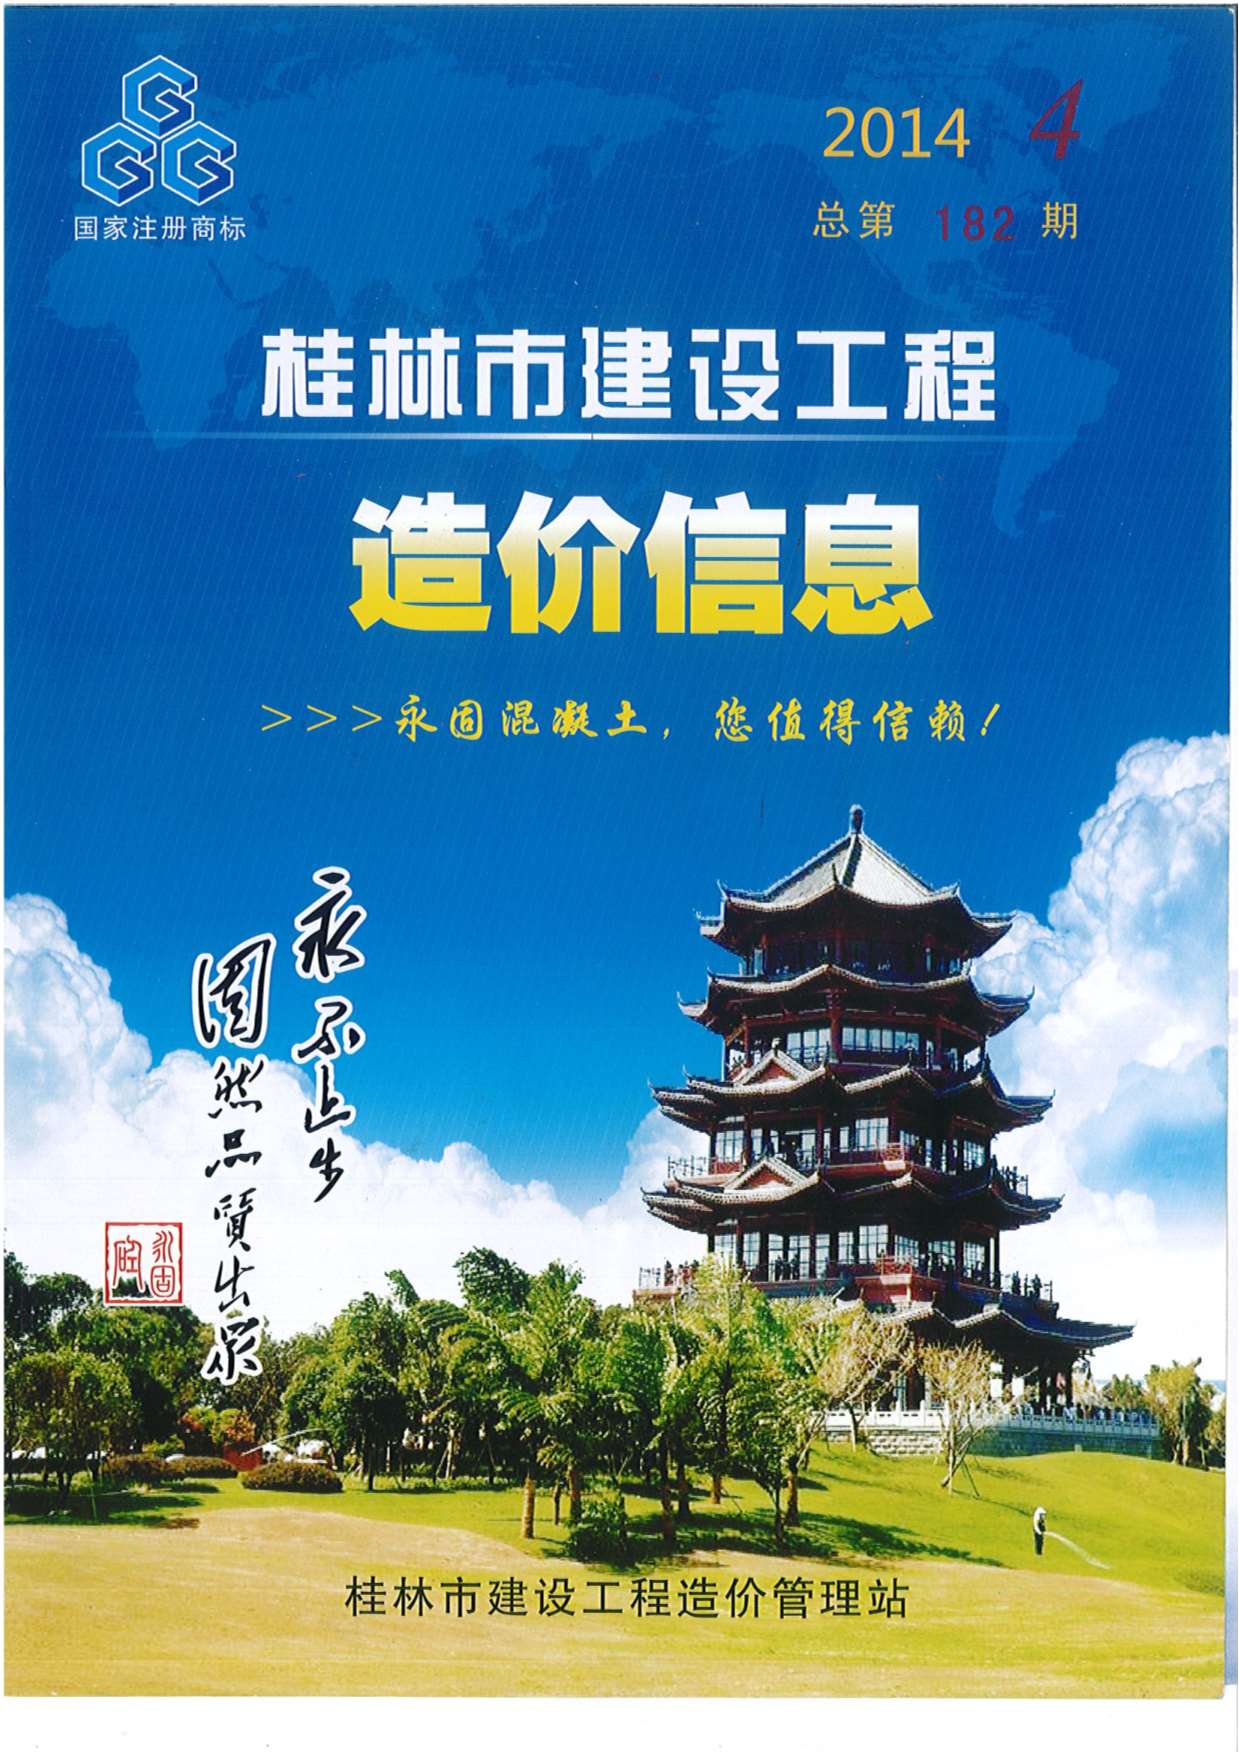 桂林市2014年4月建设工程造价信息